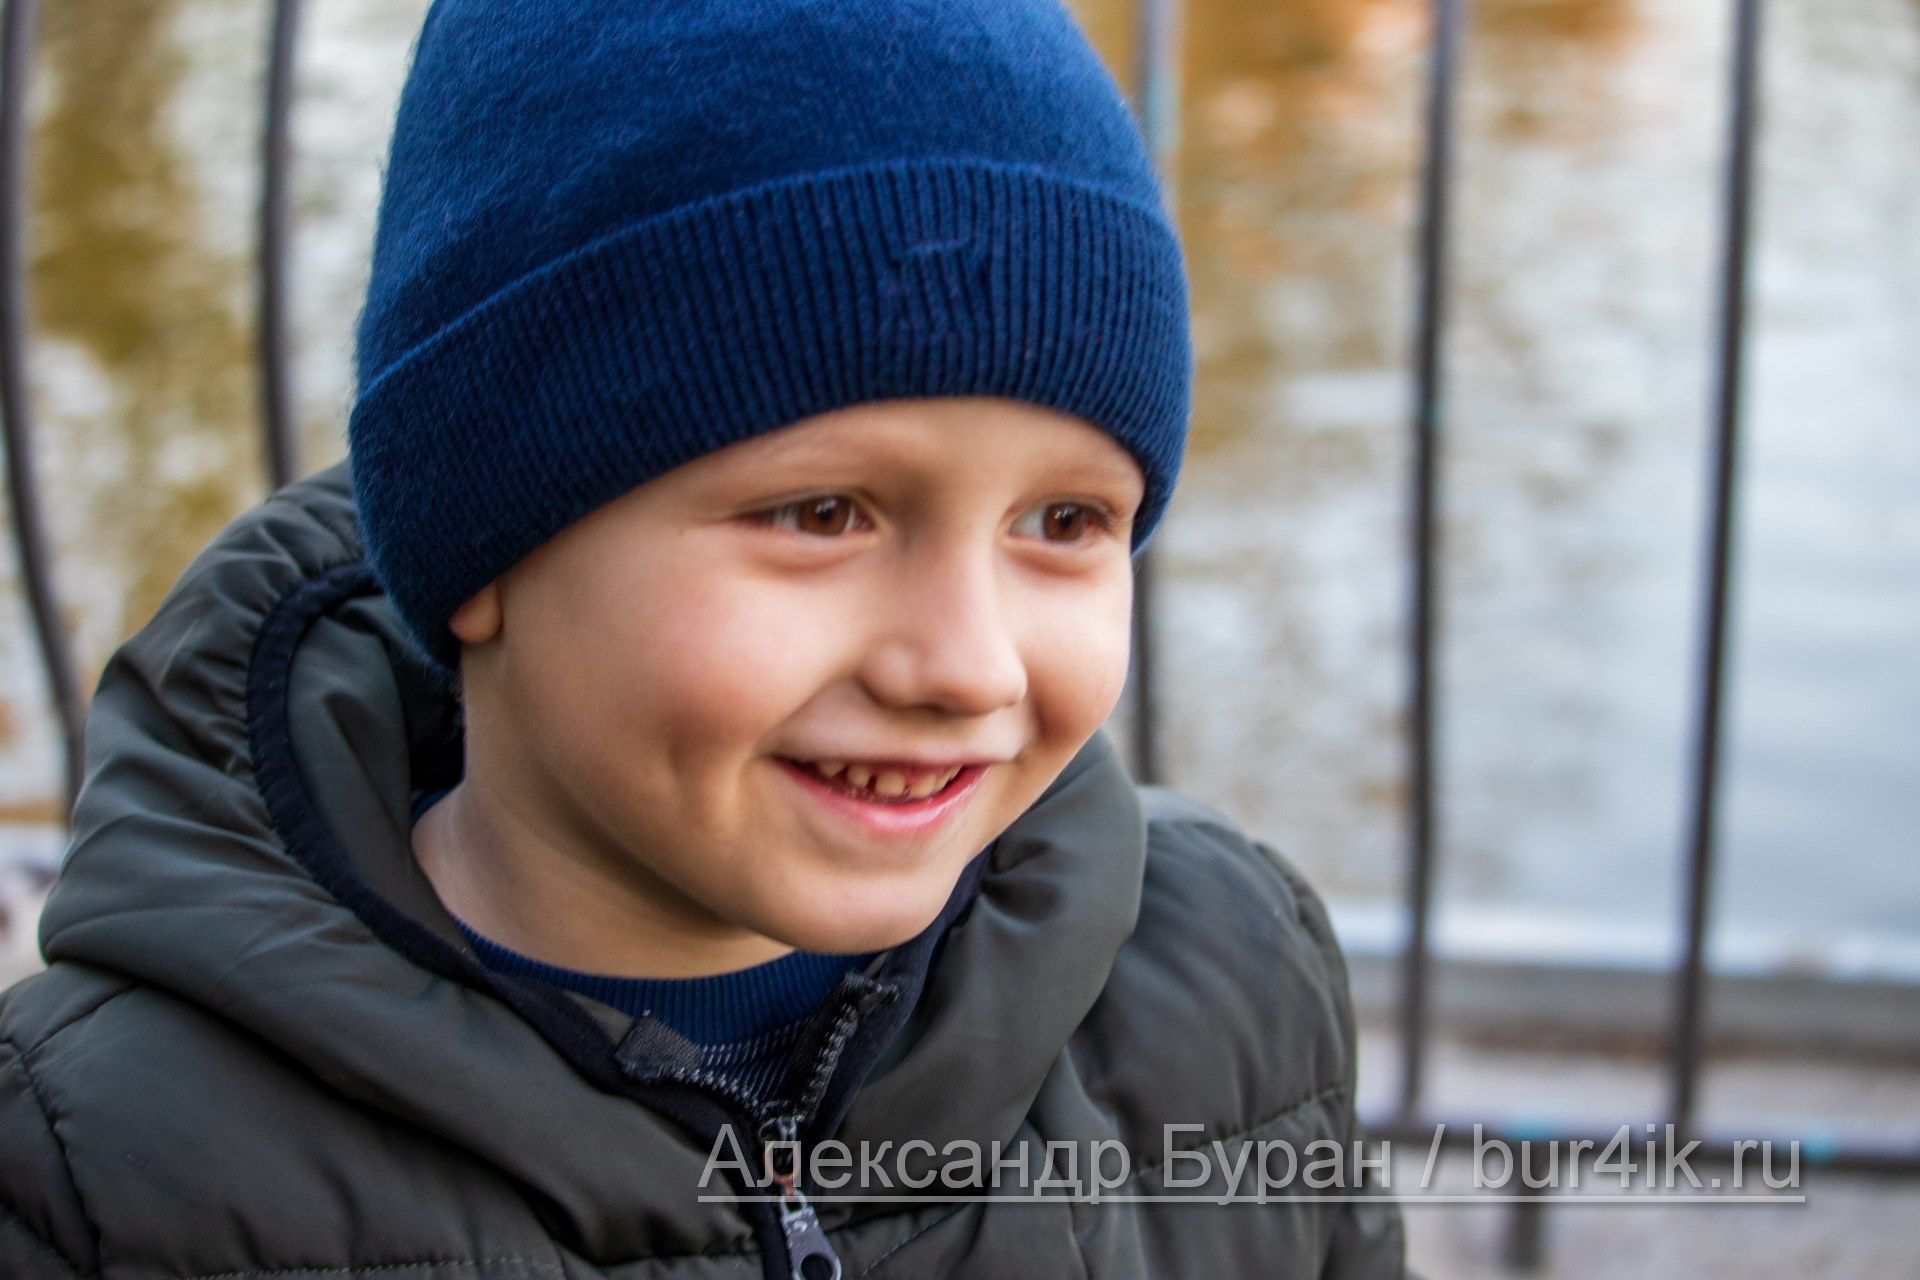 Улыбка мальчика в синей кепке на фоне озера